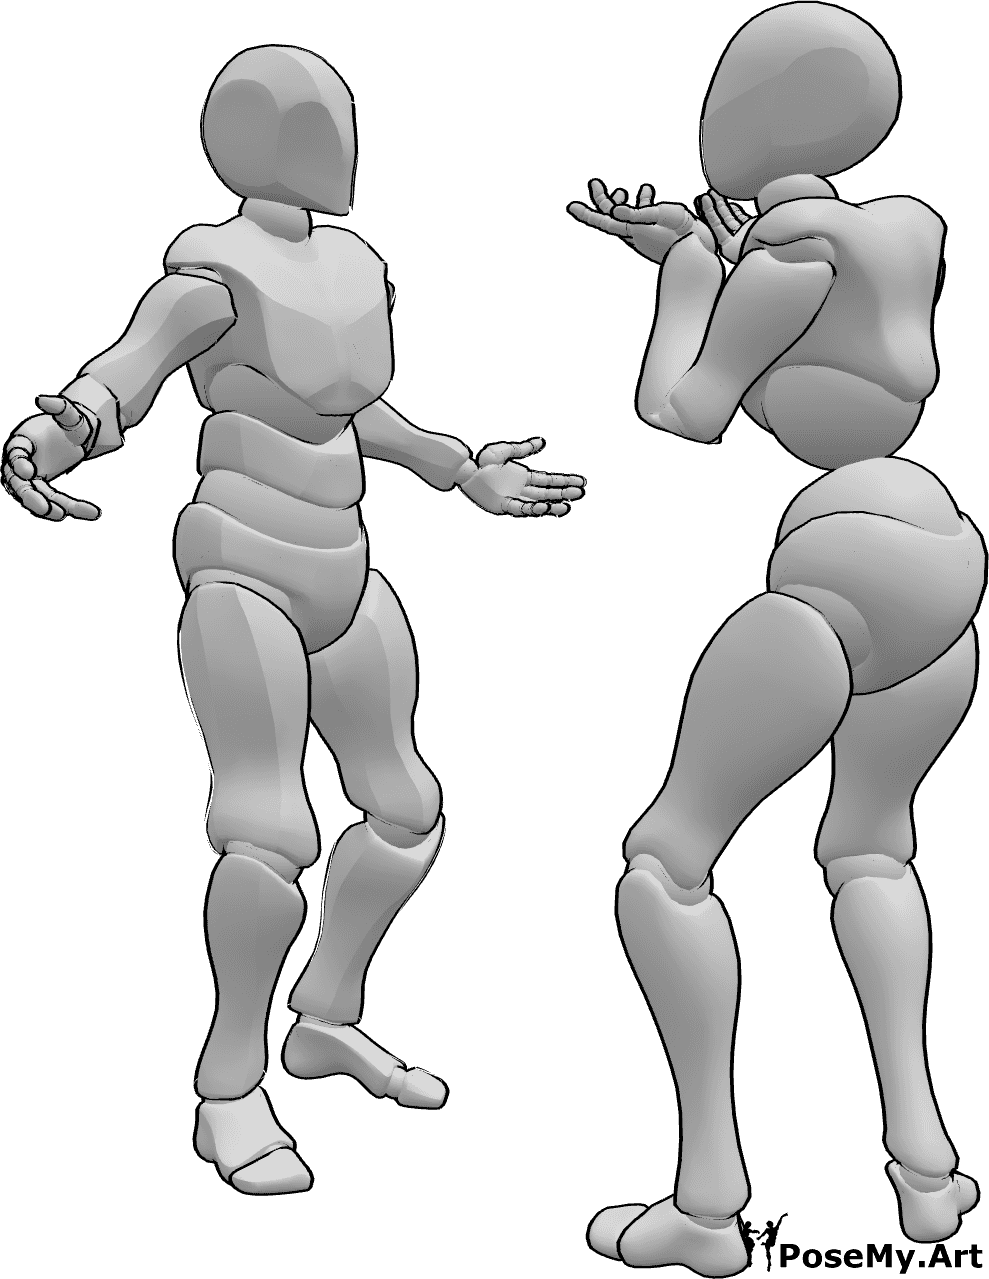 Referência de poses- Casal a lutar em pose dramática - O casal está a lutar com uma pose dramática